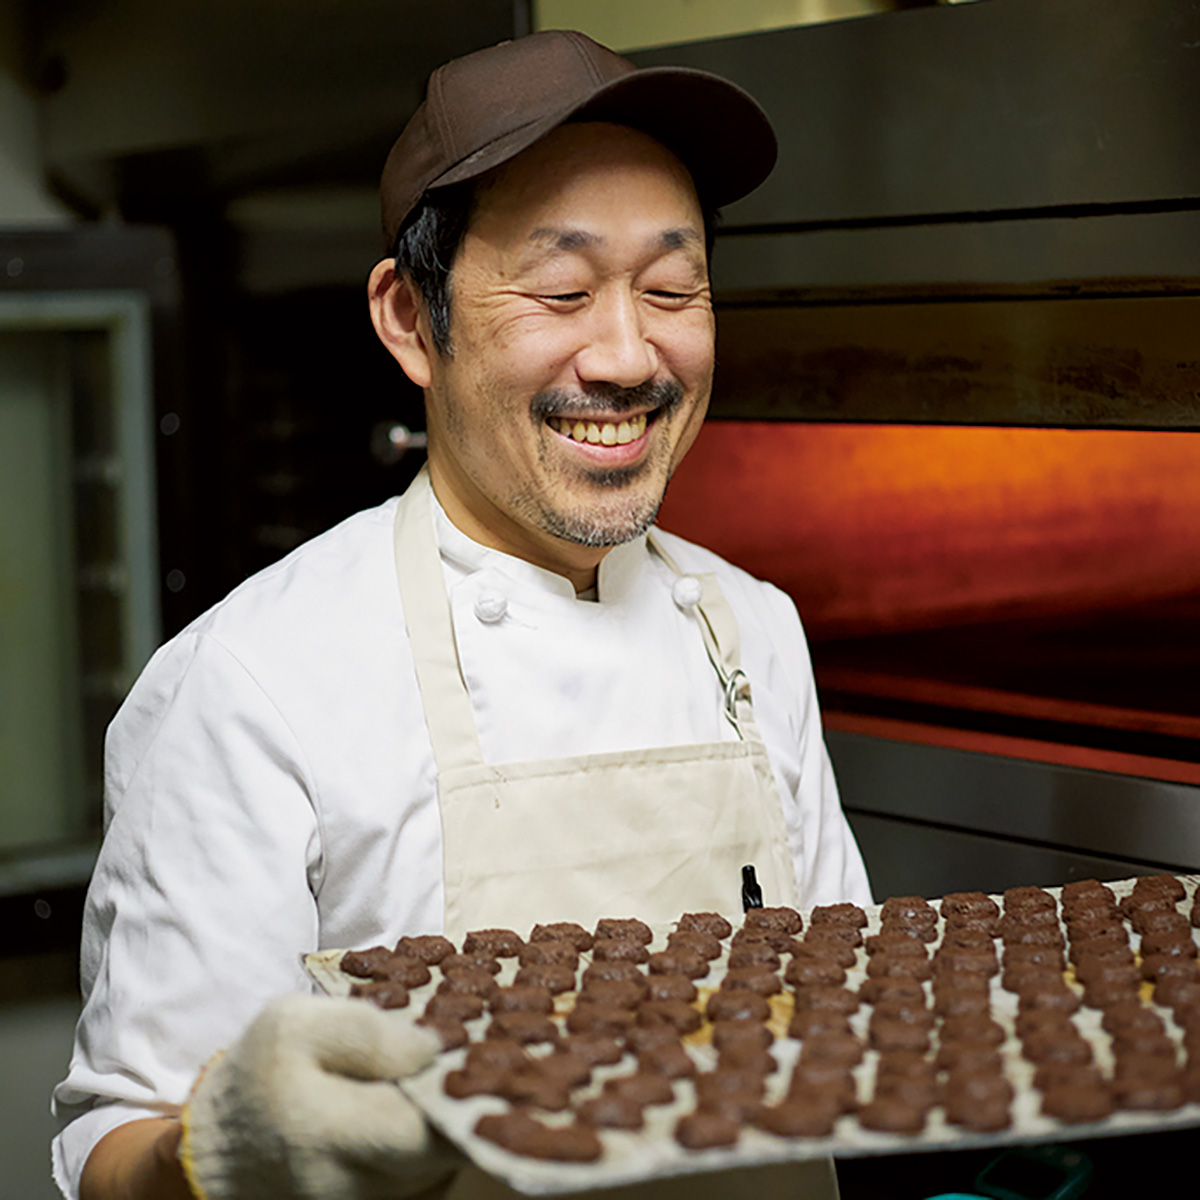 「シュークリームは、お菓子のおいしさの原点。菓子職人の自分にとって“おふくろの味”のようなもの」と話す、神田シェフ。